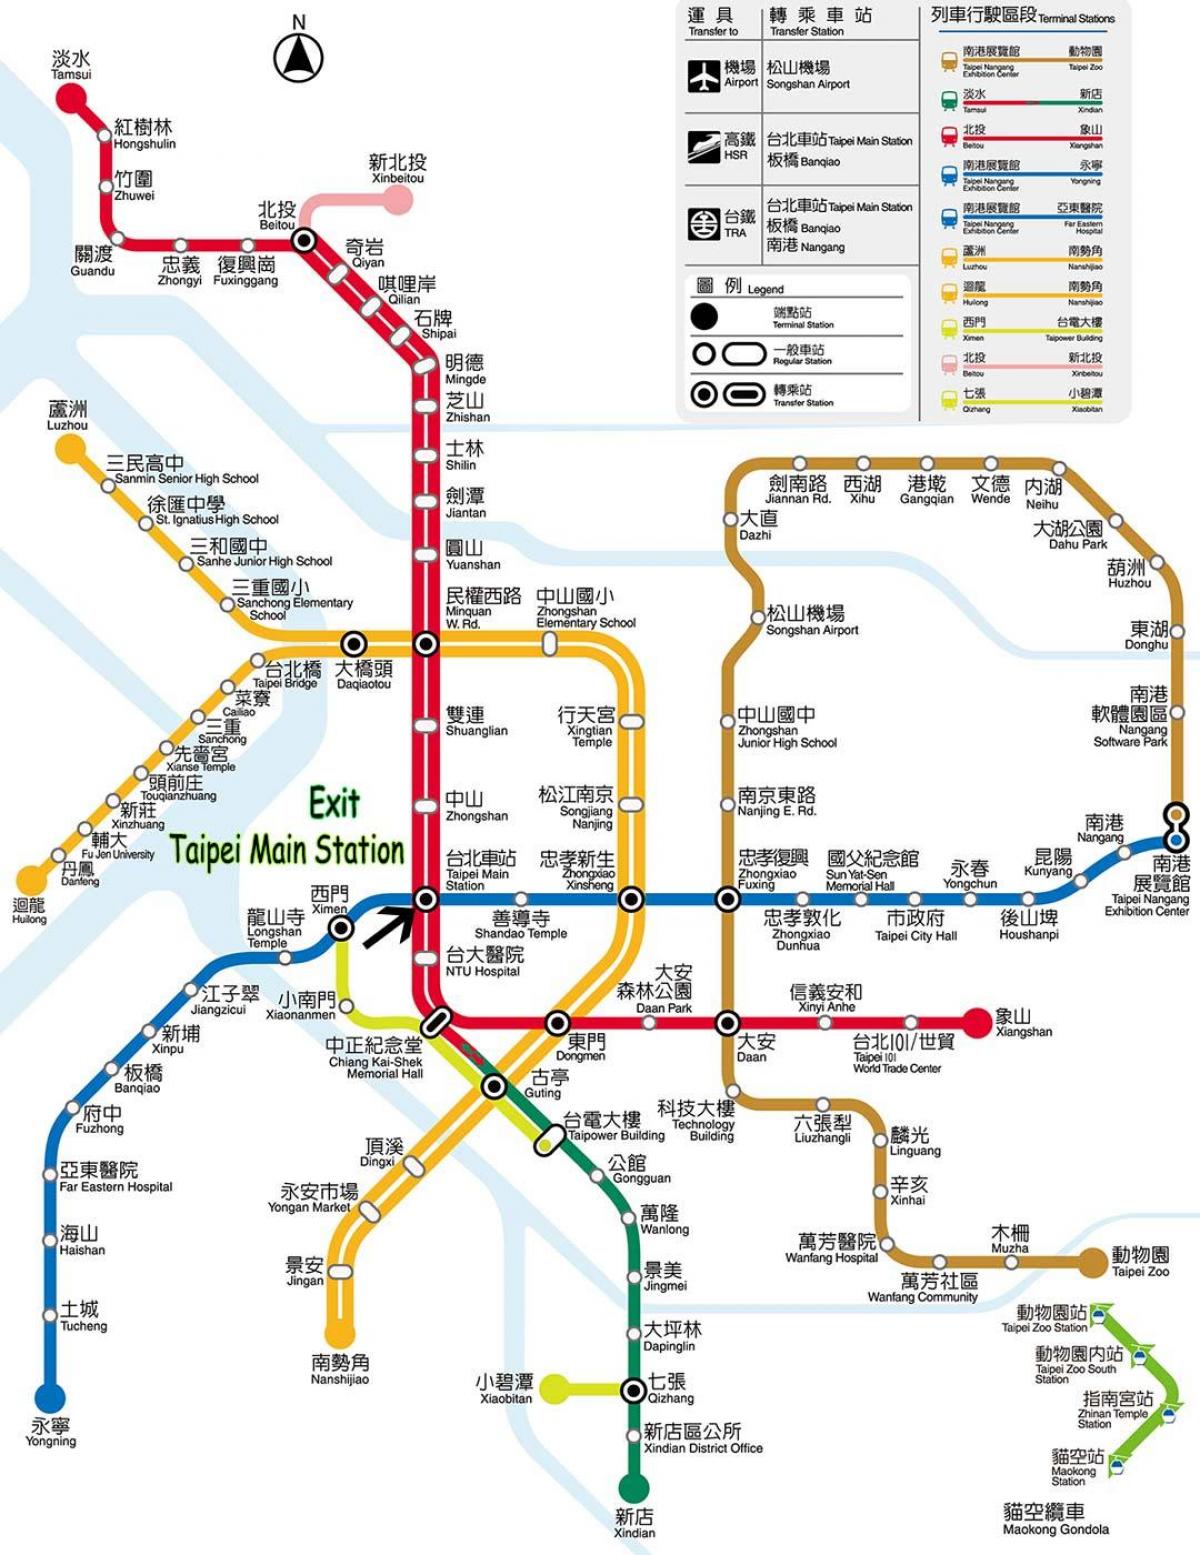 خريطة تايبيه محطة الحافلات